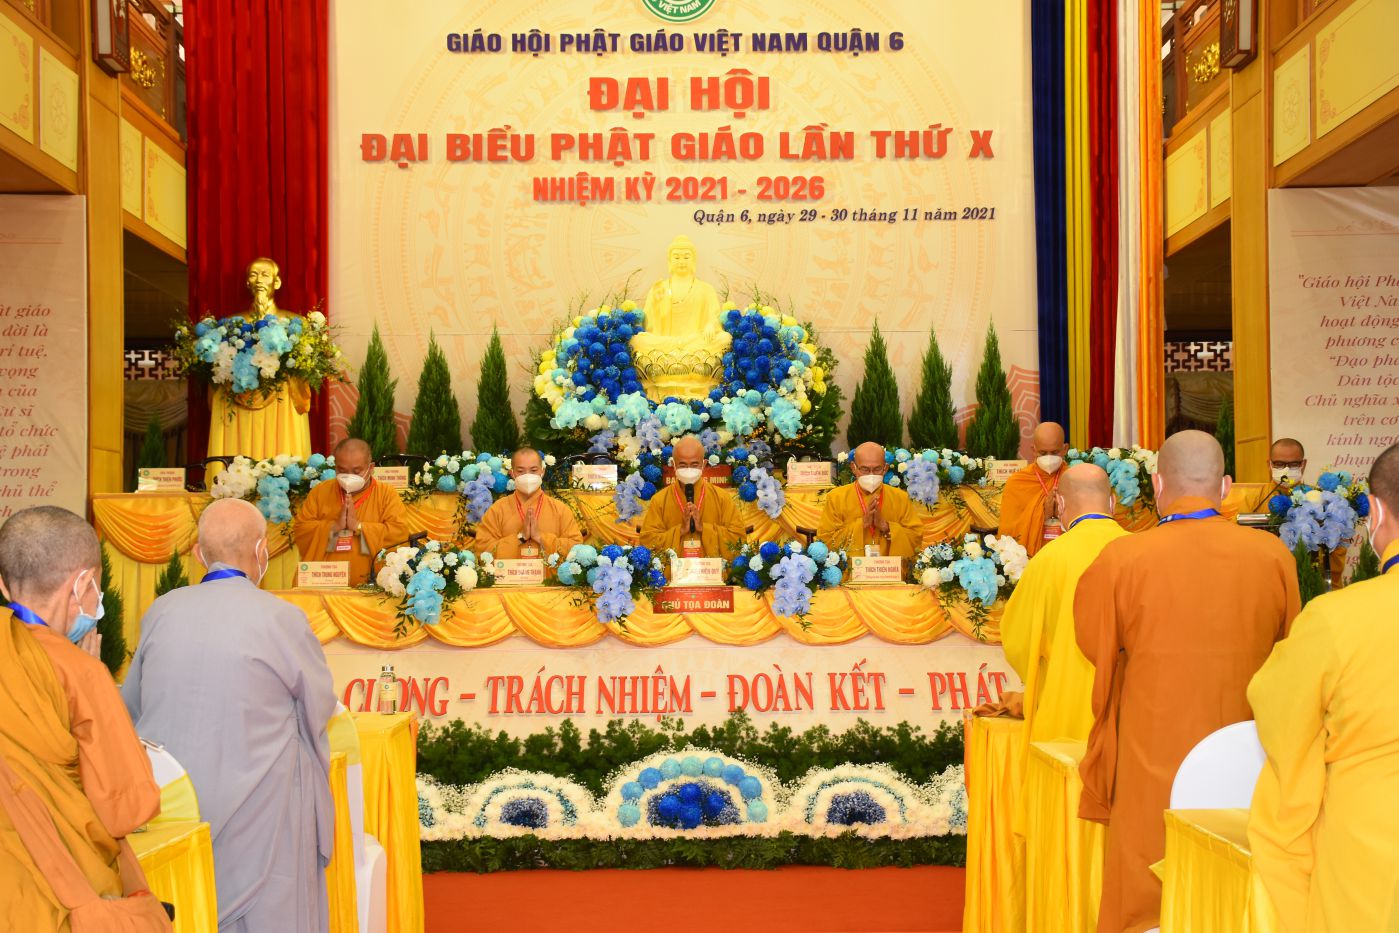 Phật giáo quận 6 tổ chức phiên trù bị đại hội khóa X, nhiệm kỳ 2021-2026 